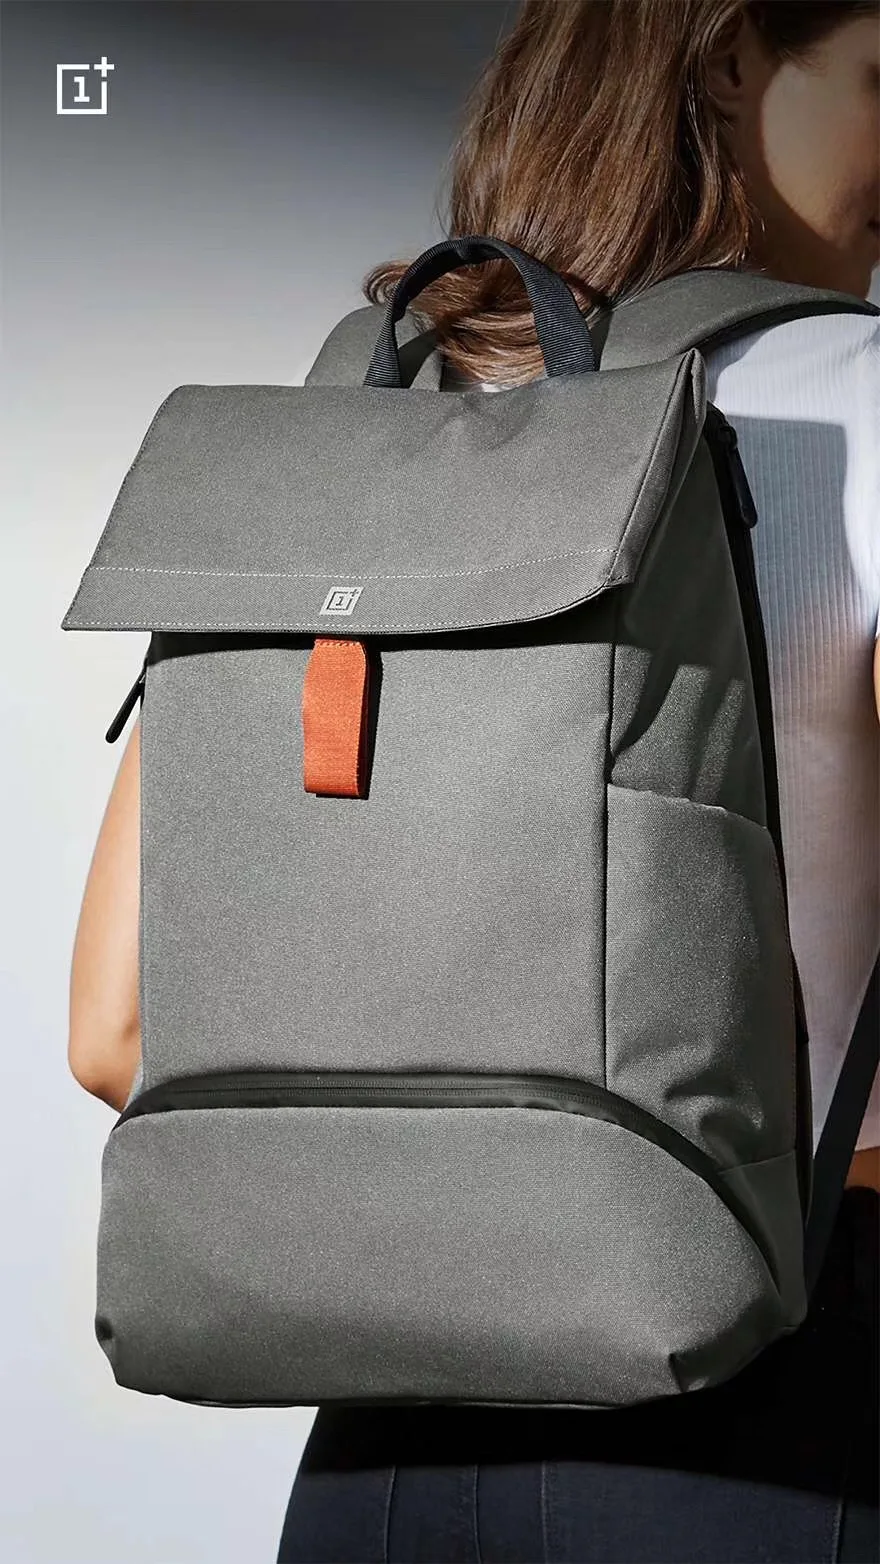 Официальный рюкзак Oneplus Explorer, простой Нейлоновый Рюкзак Cordura, тканевая дорожная сумка для компьютера